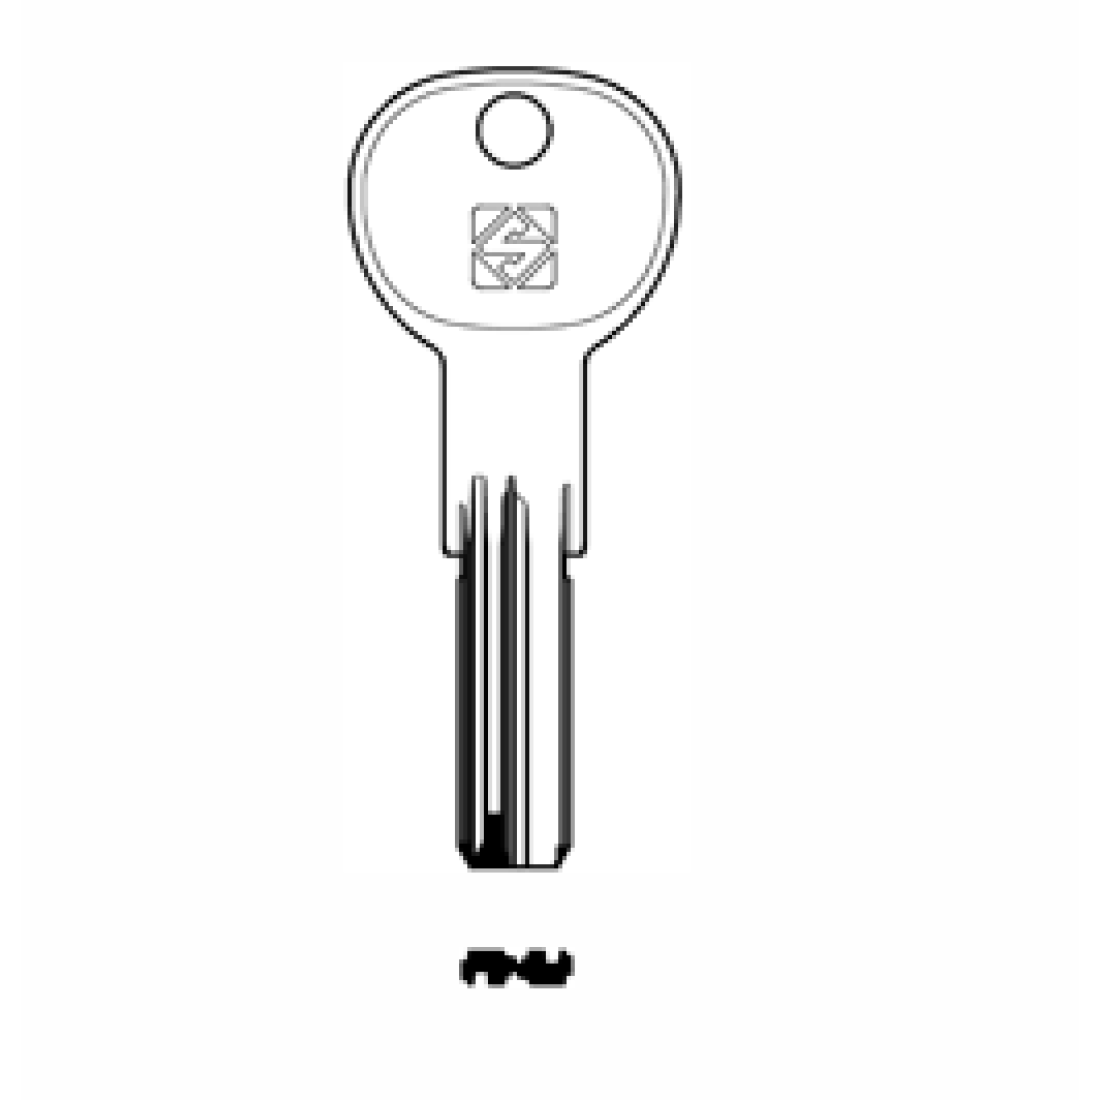 Заготовка ключа is-10, ie26. Заготовка для ключей Silca krc1. Ключ силка. Sts6 заготовка ключа для кофейных аппаратов. Profile key